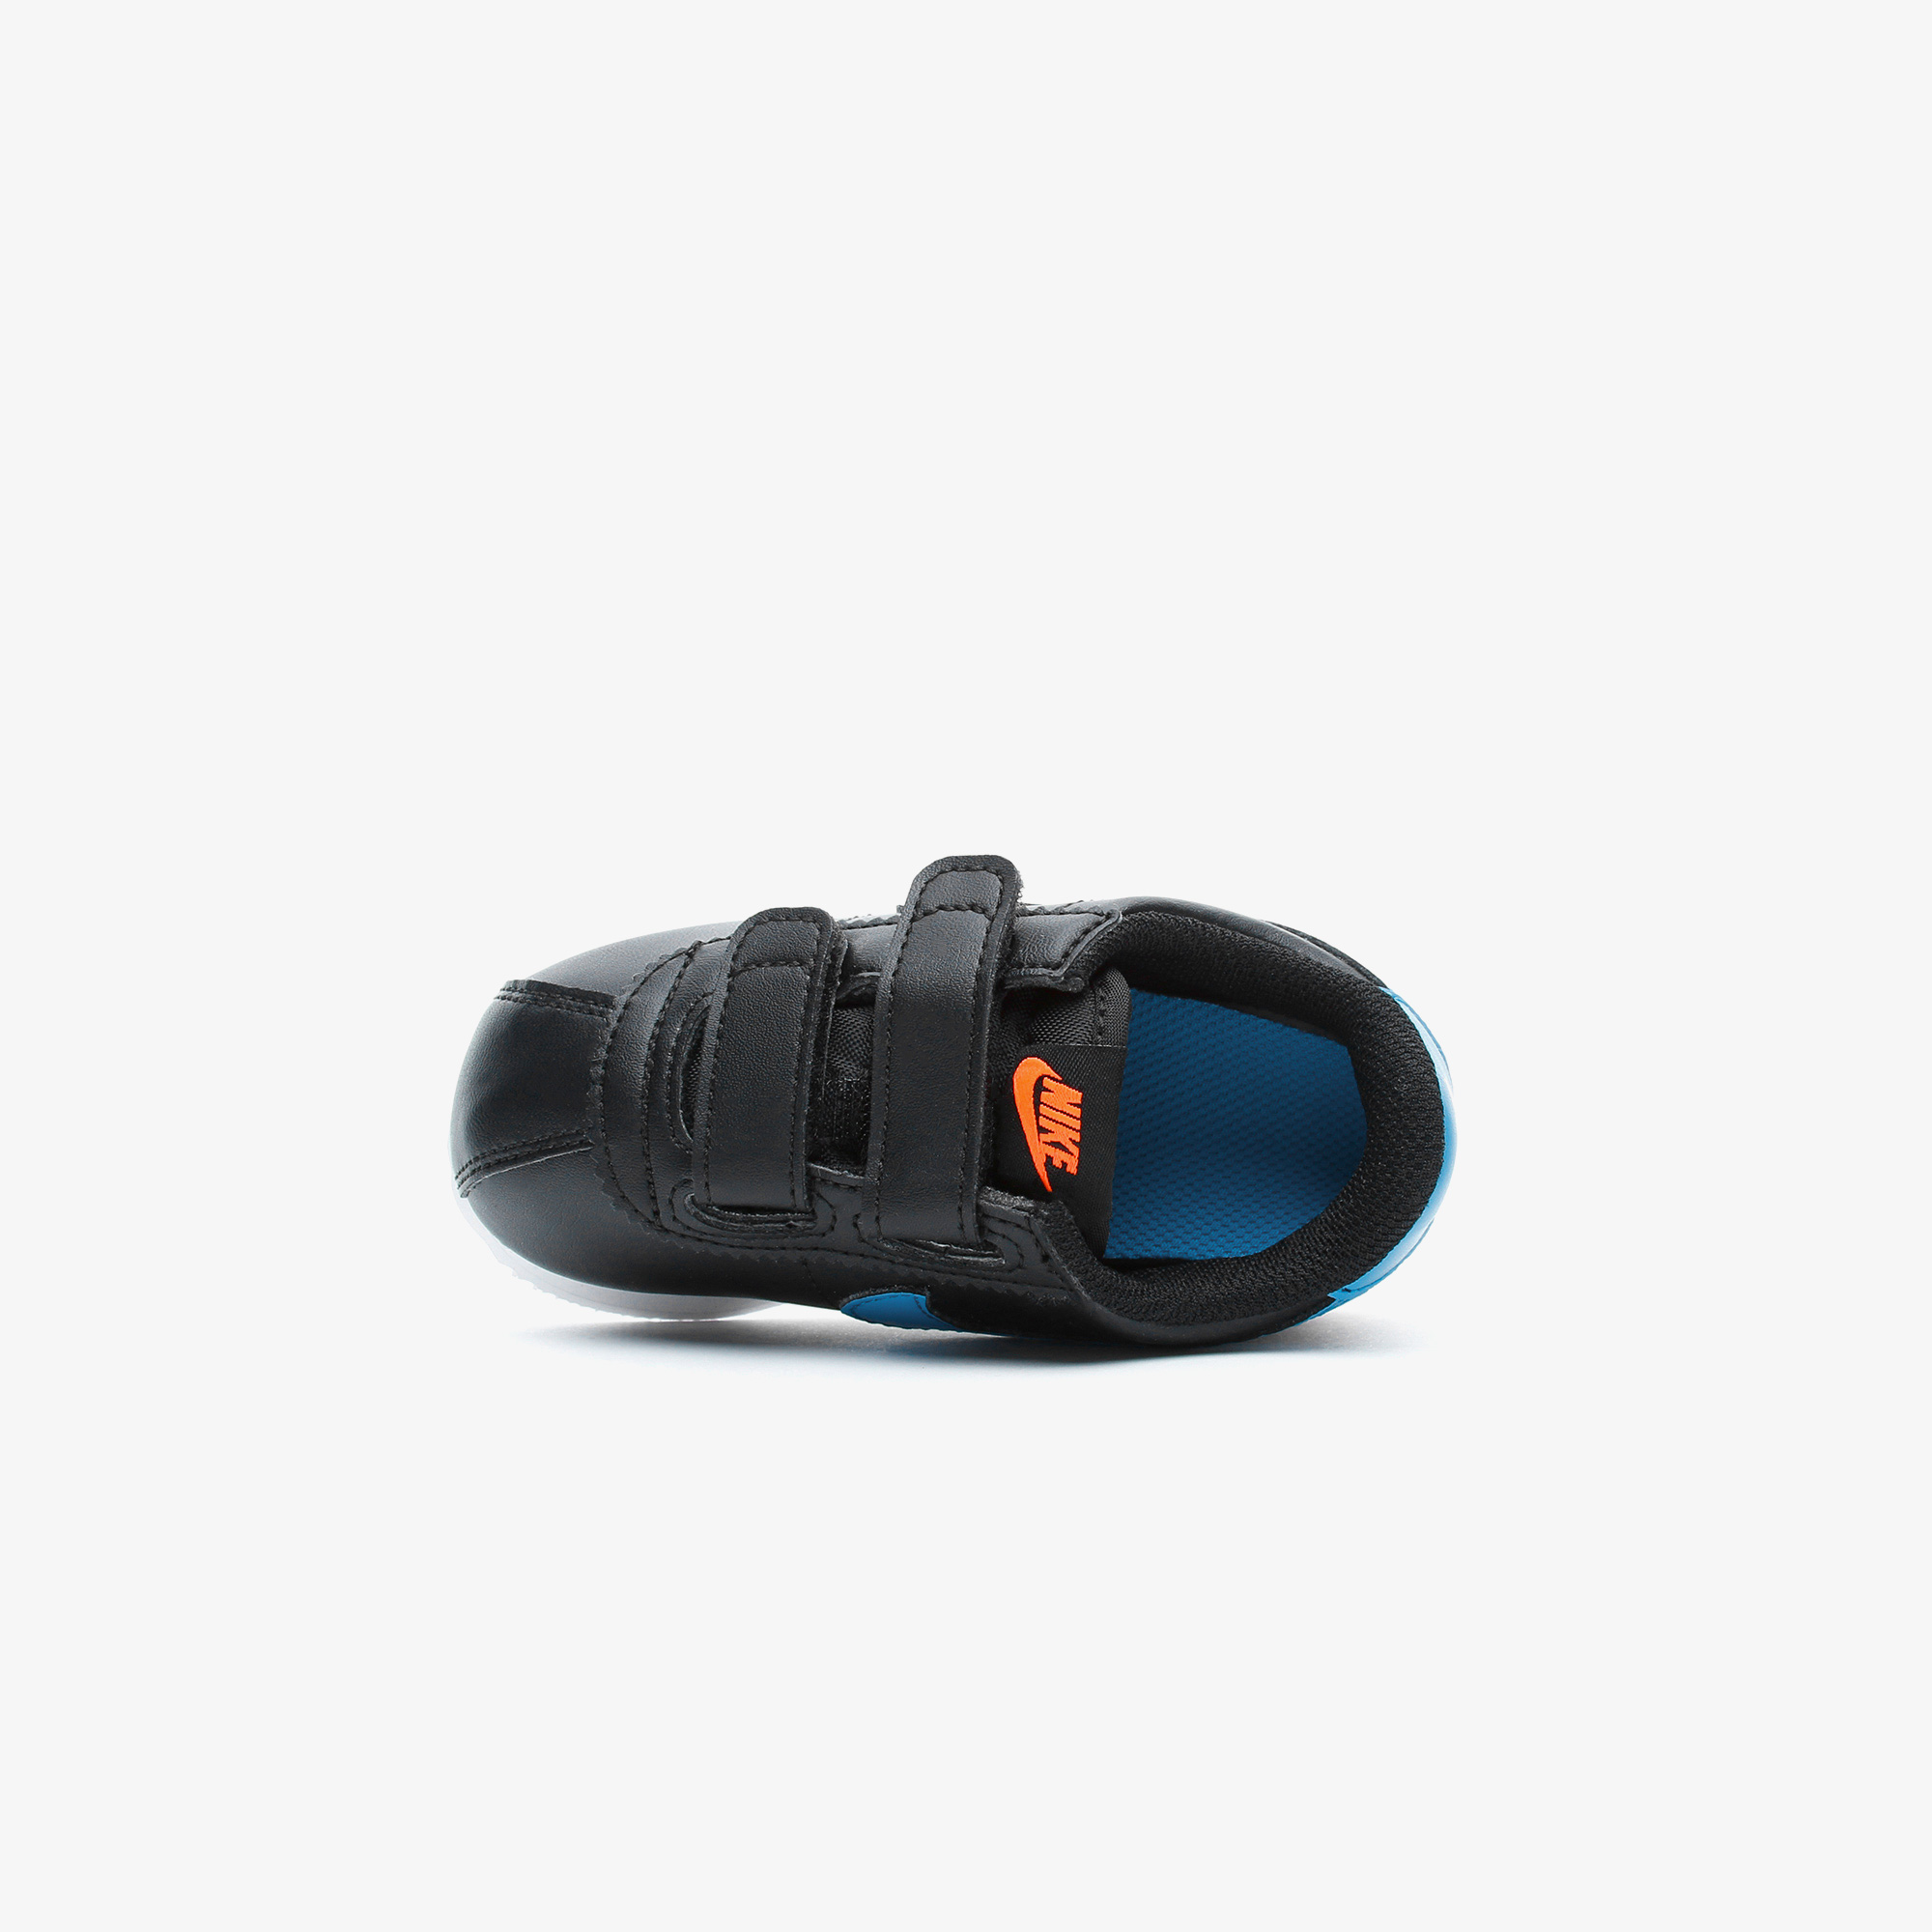 Nike Cortez Basic SL Bebek Siyah Spor Ayakkabı